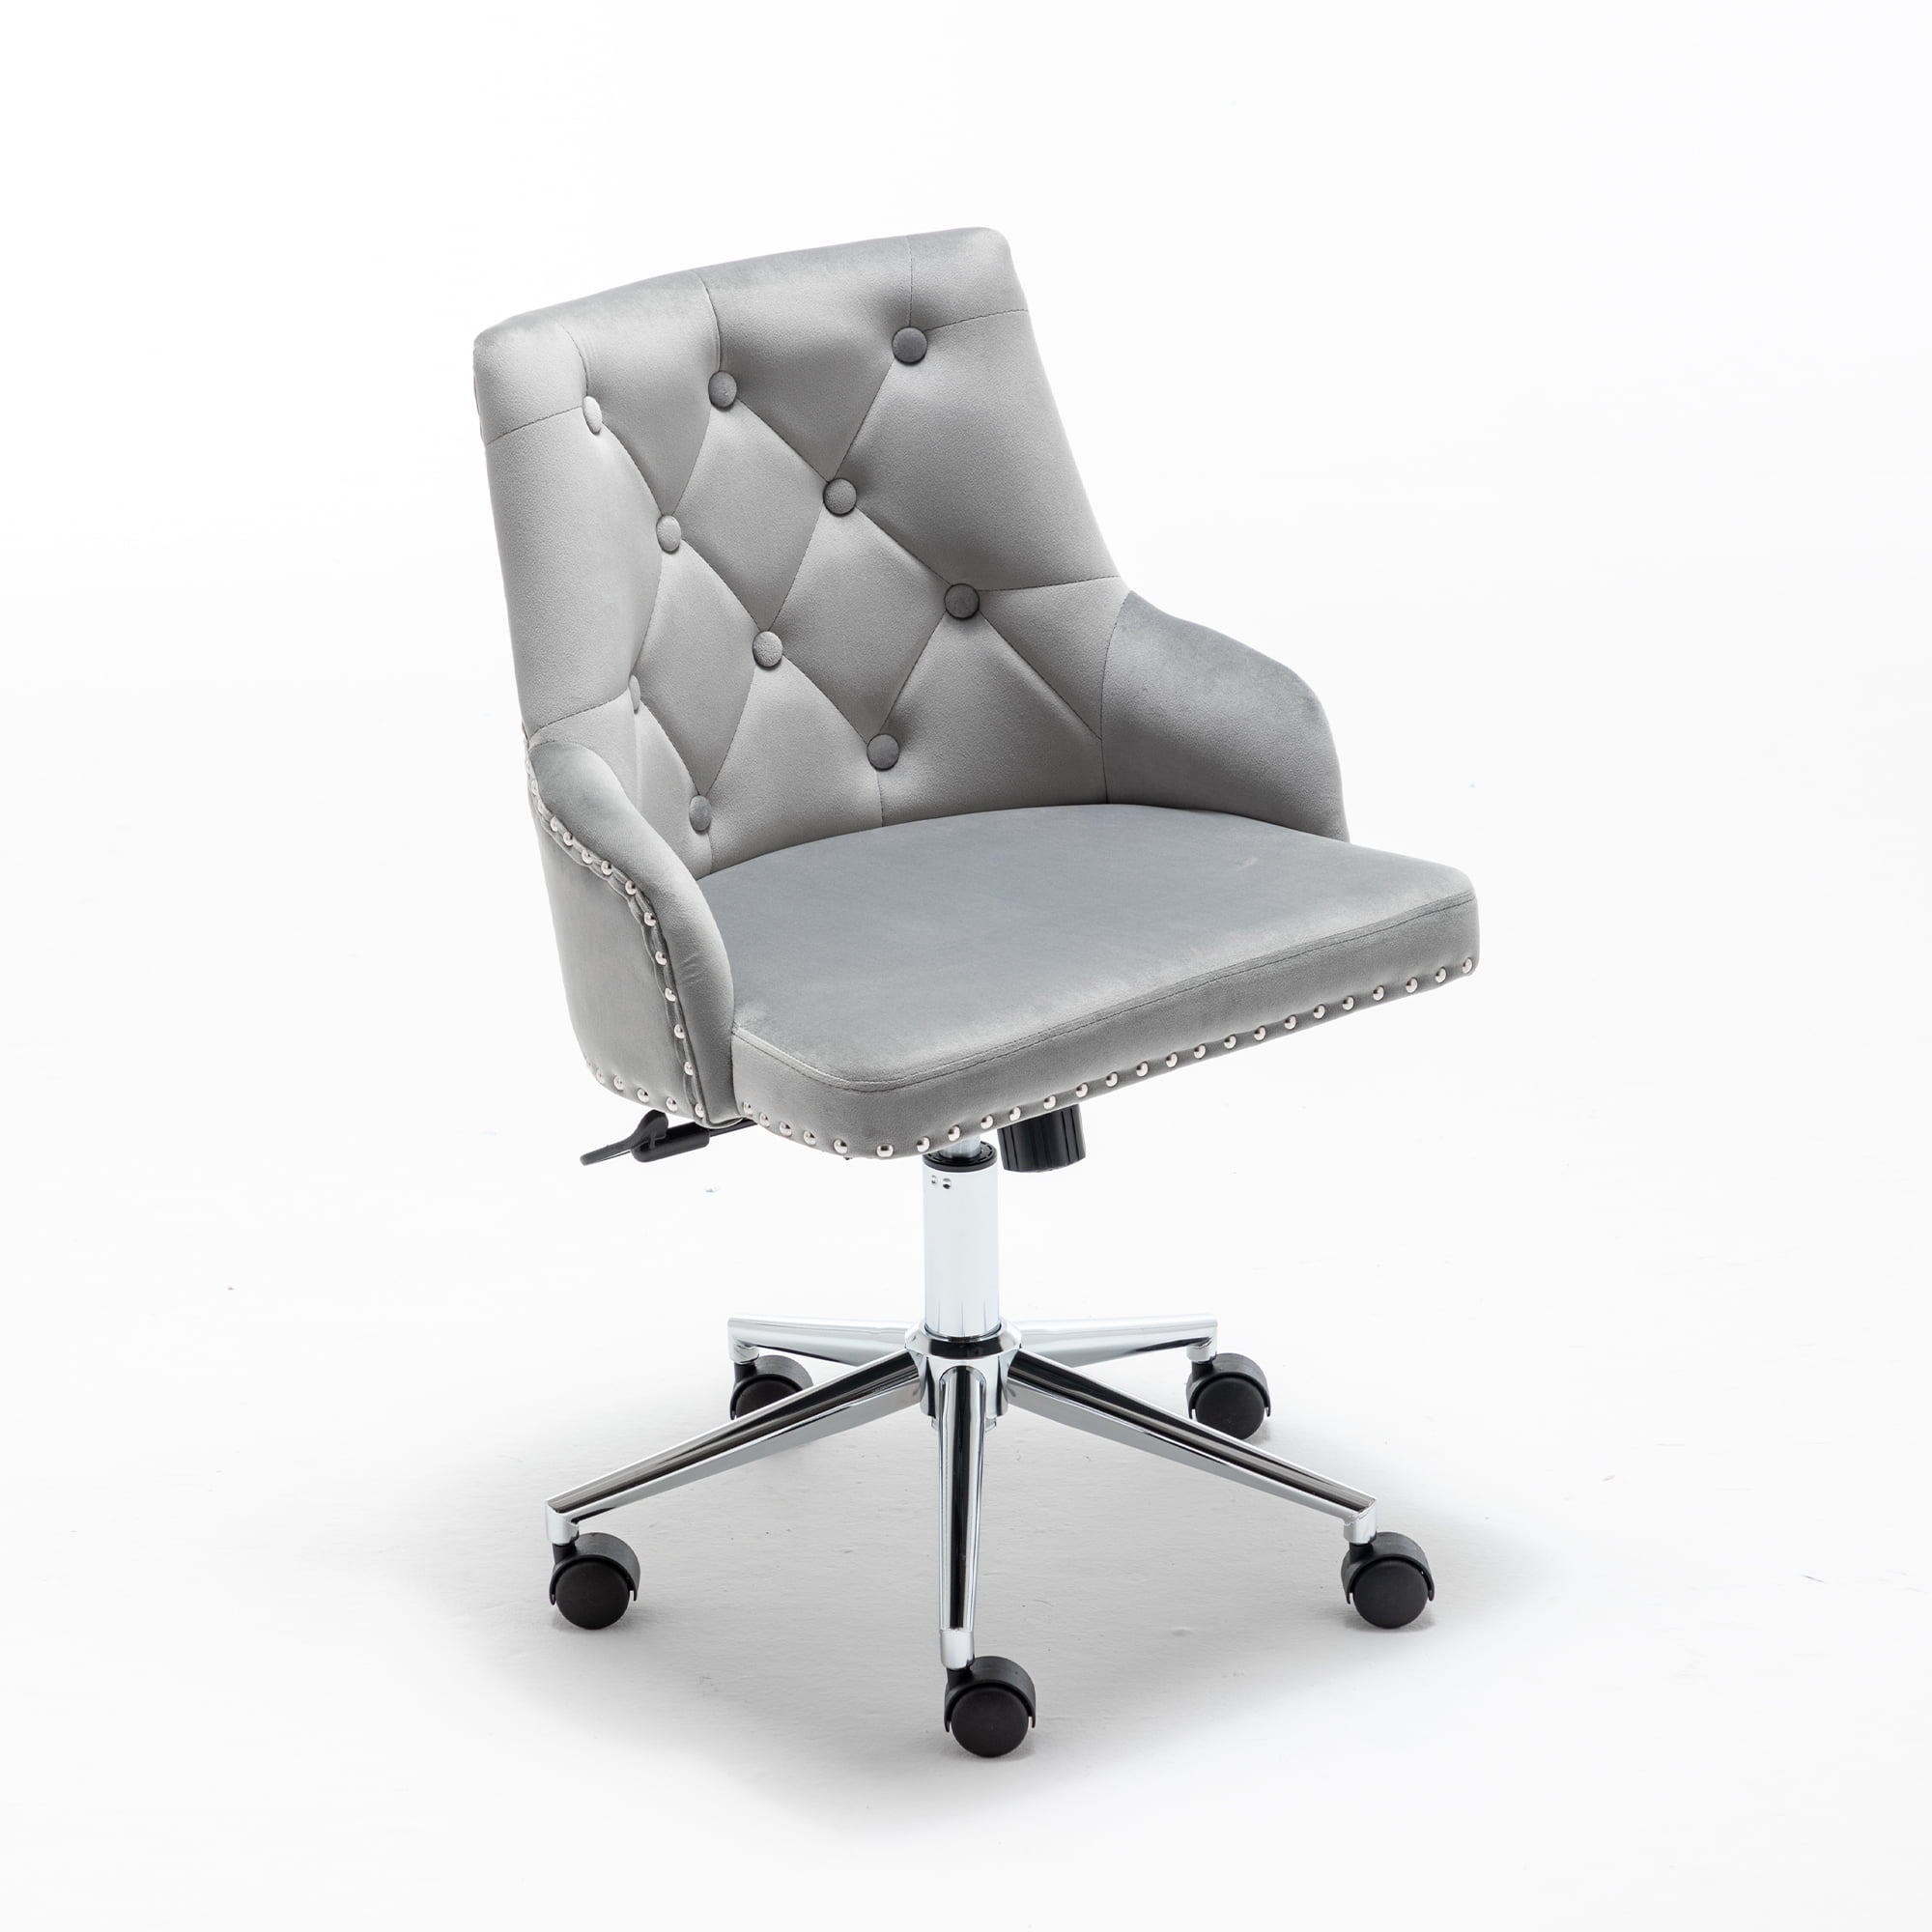 Furniture Home High Back Office Chair, Modern Design Velvet Desk Task